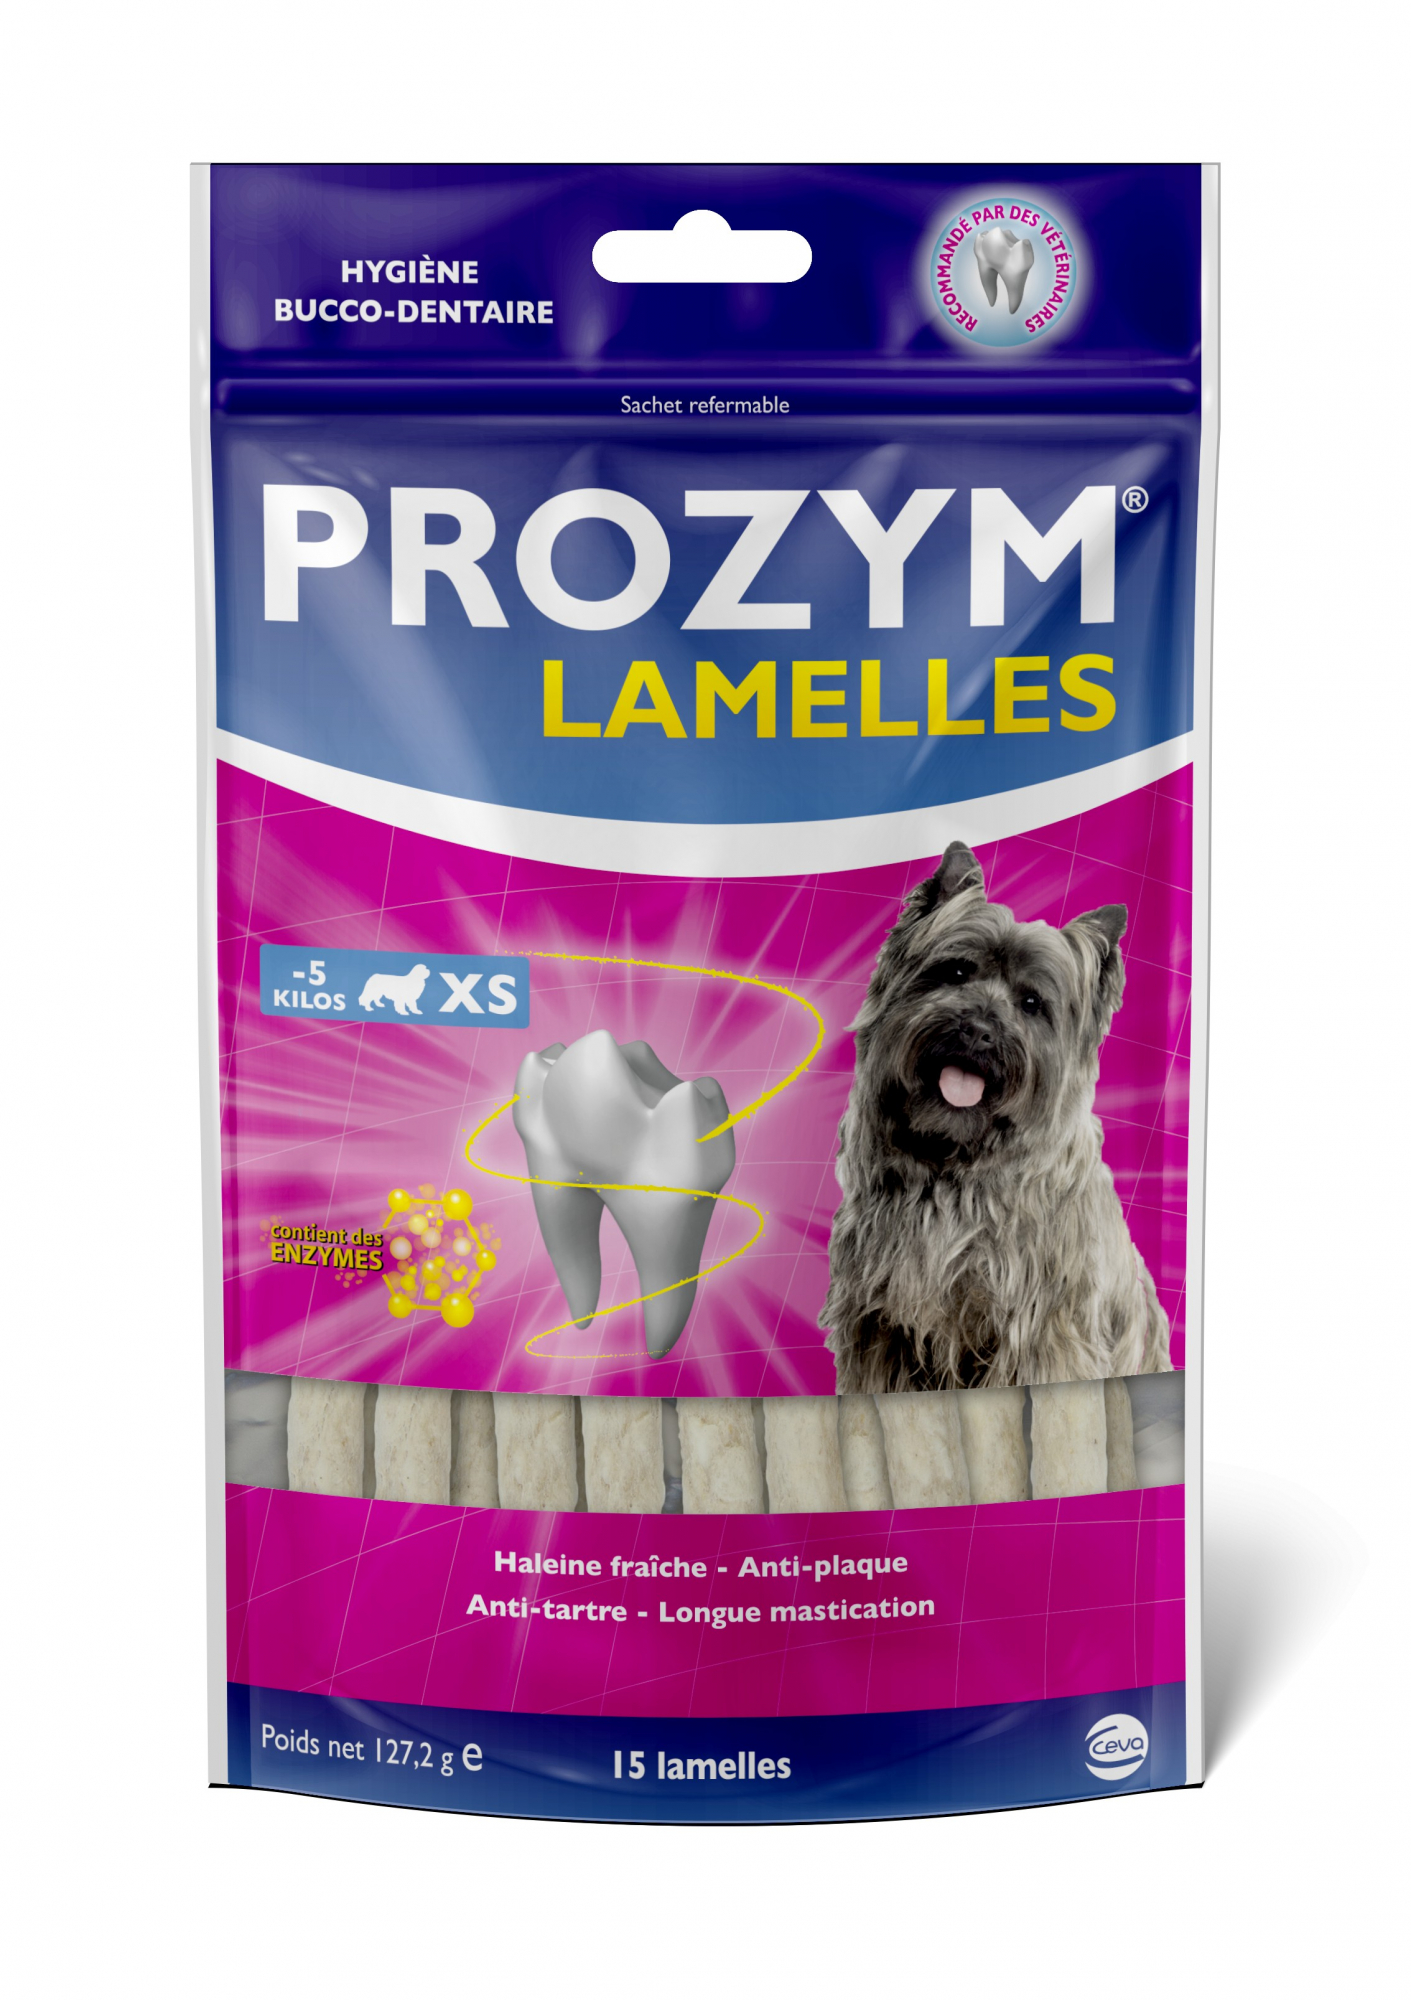 PROZYM Lamelles pour l'hygiène bucco-dentaire du chien